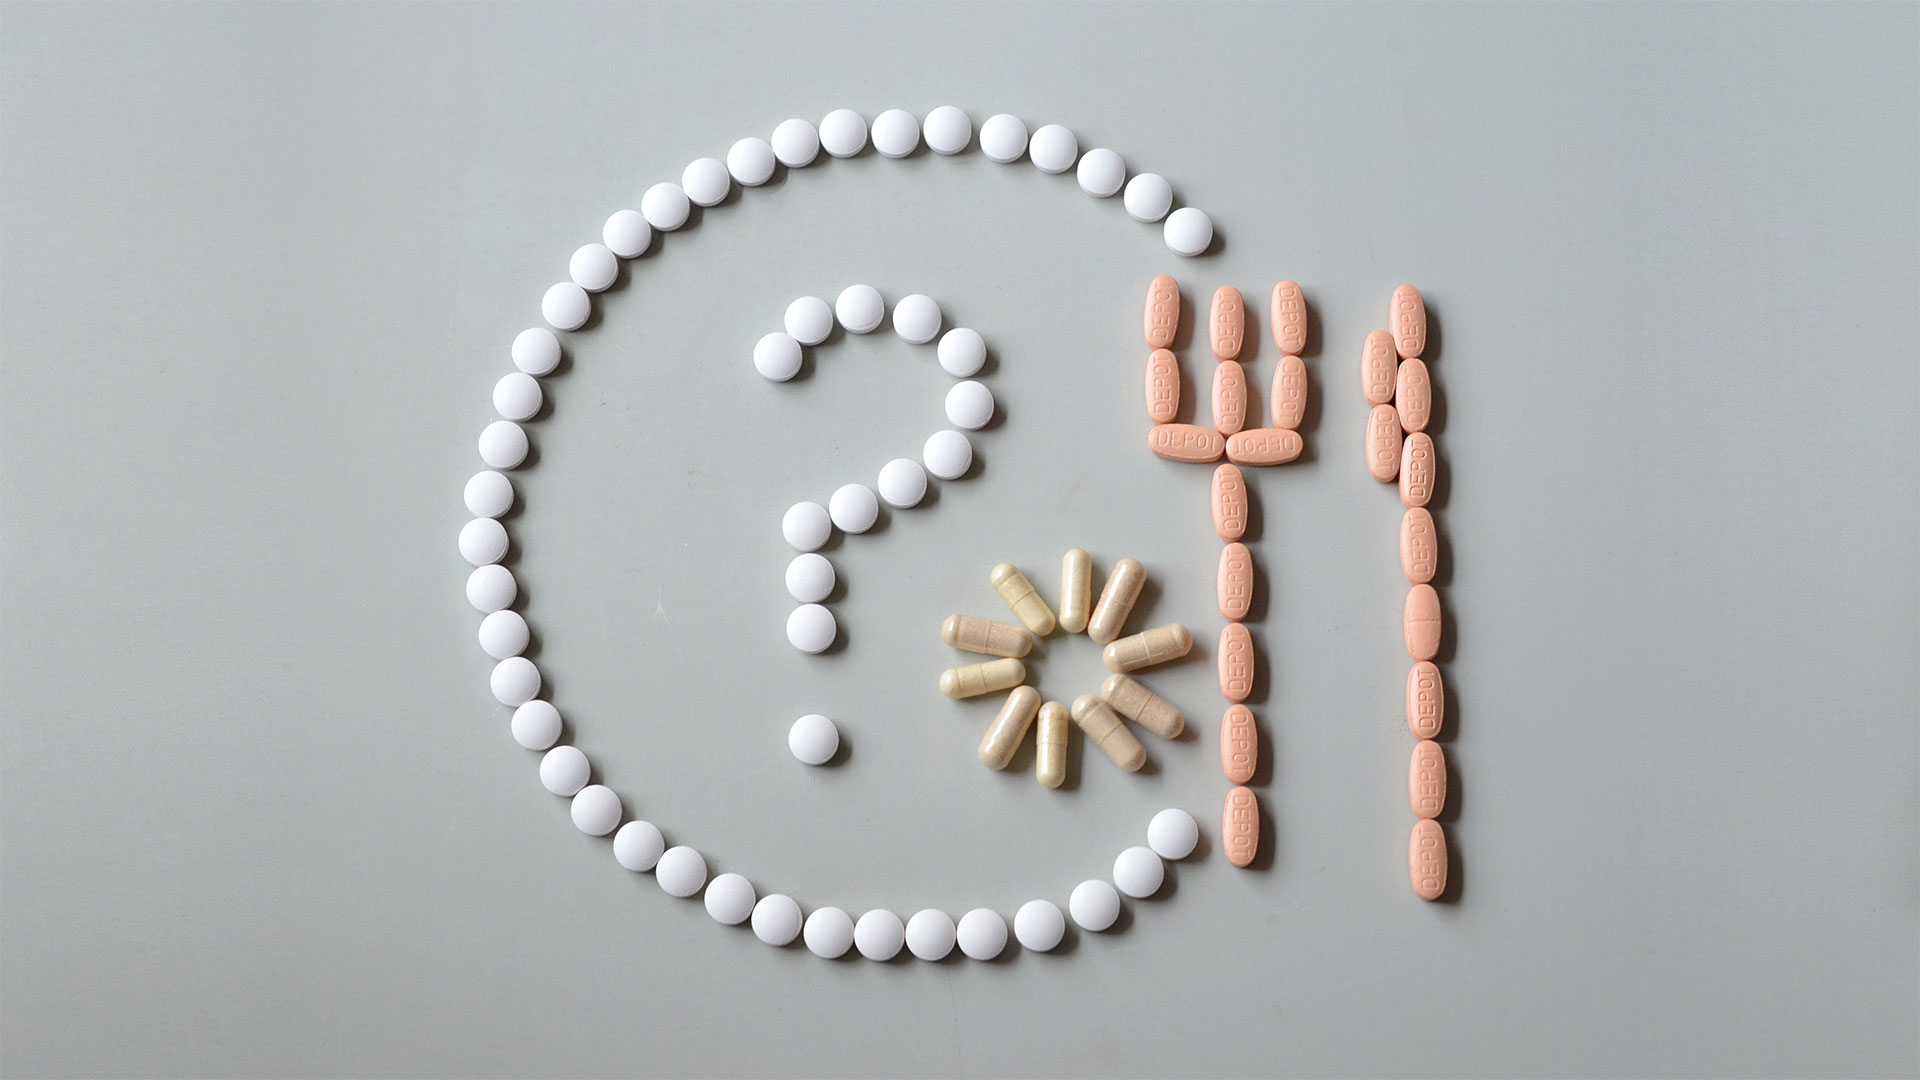 Bild von unterschiedlichen Pillen und Kapseln , aufgehreiht in Form eines Tellers und Besteck.